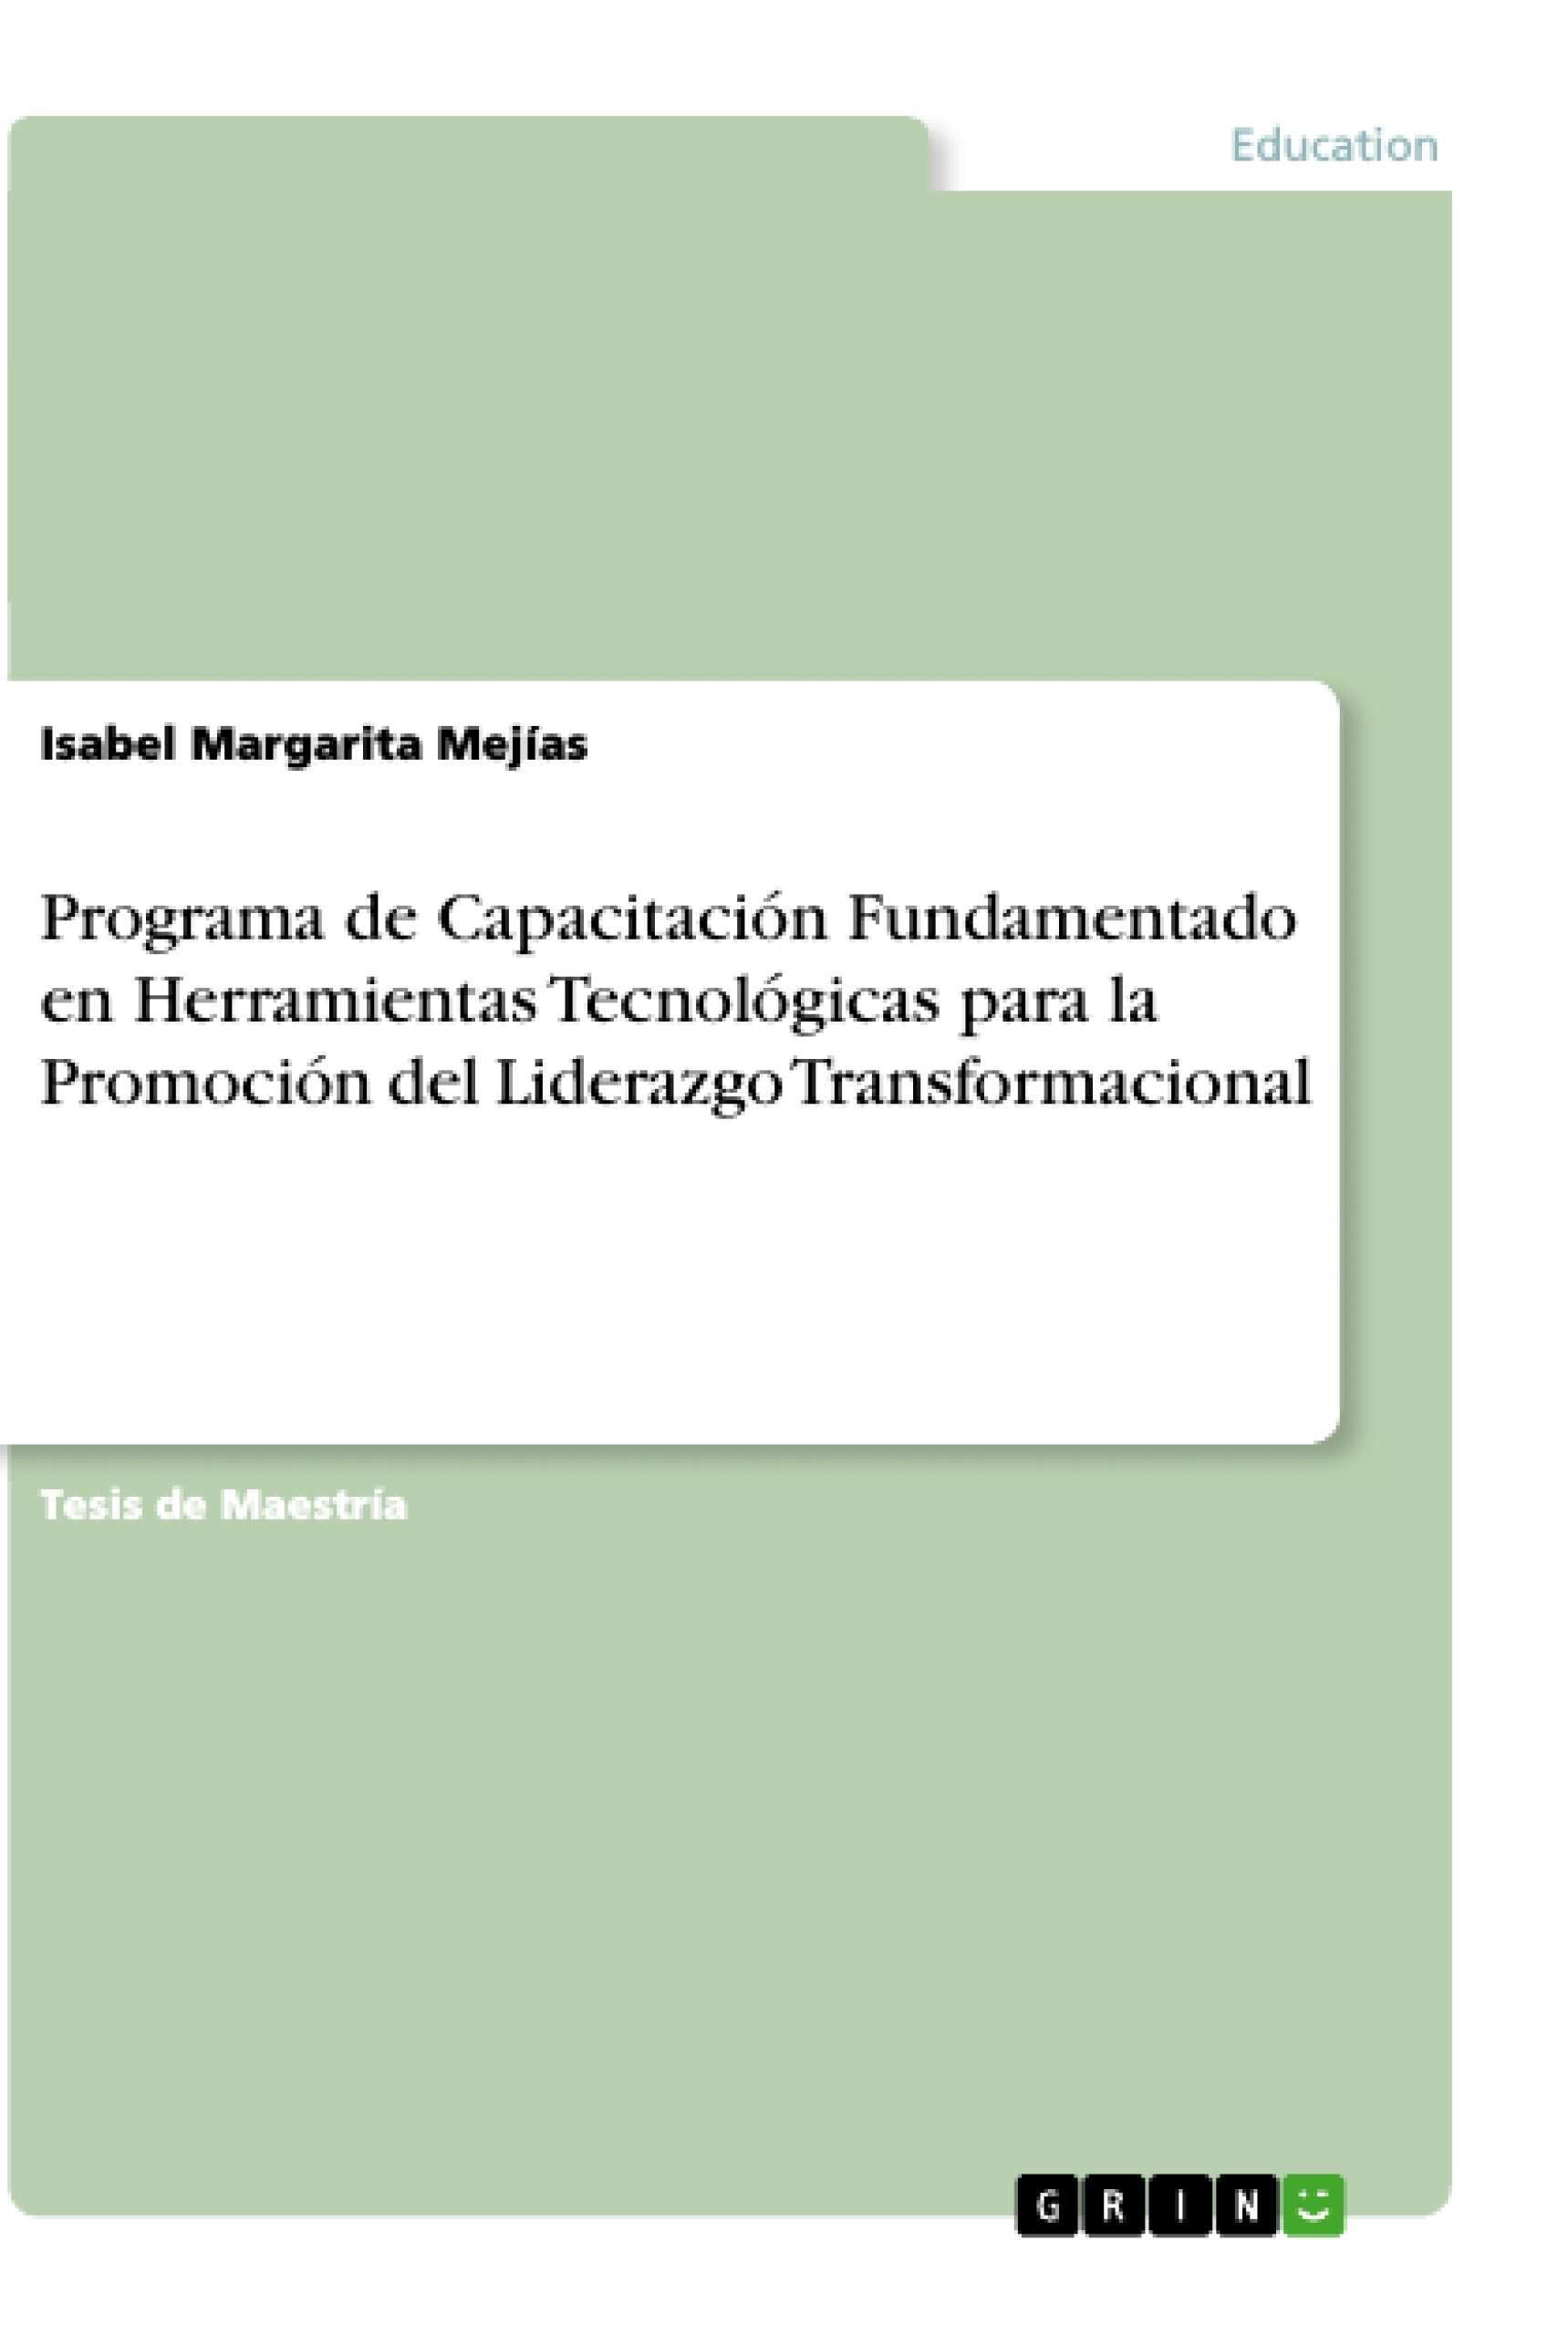 Title: Programa de Capacitación Fundamentado en Herramientas Tecnológicas para la Promoción del Liderazgo Transformacional